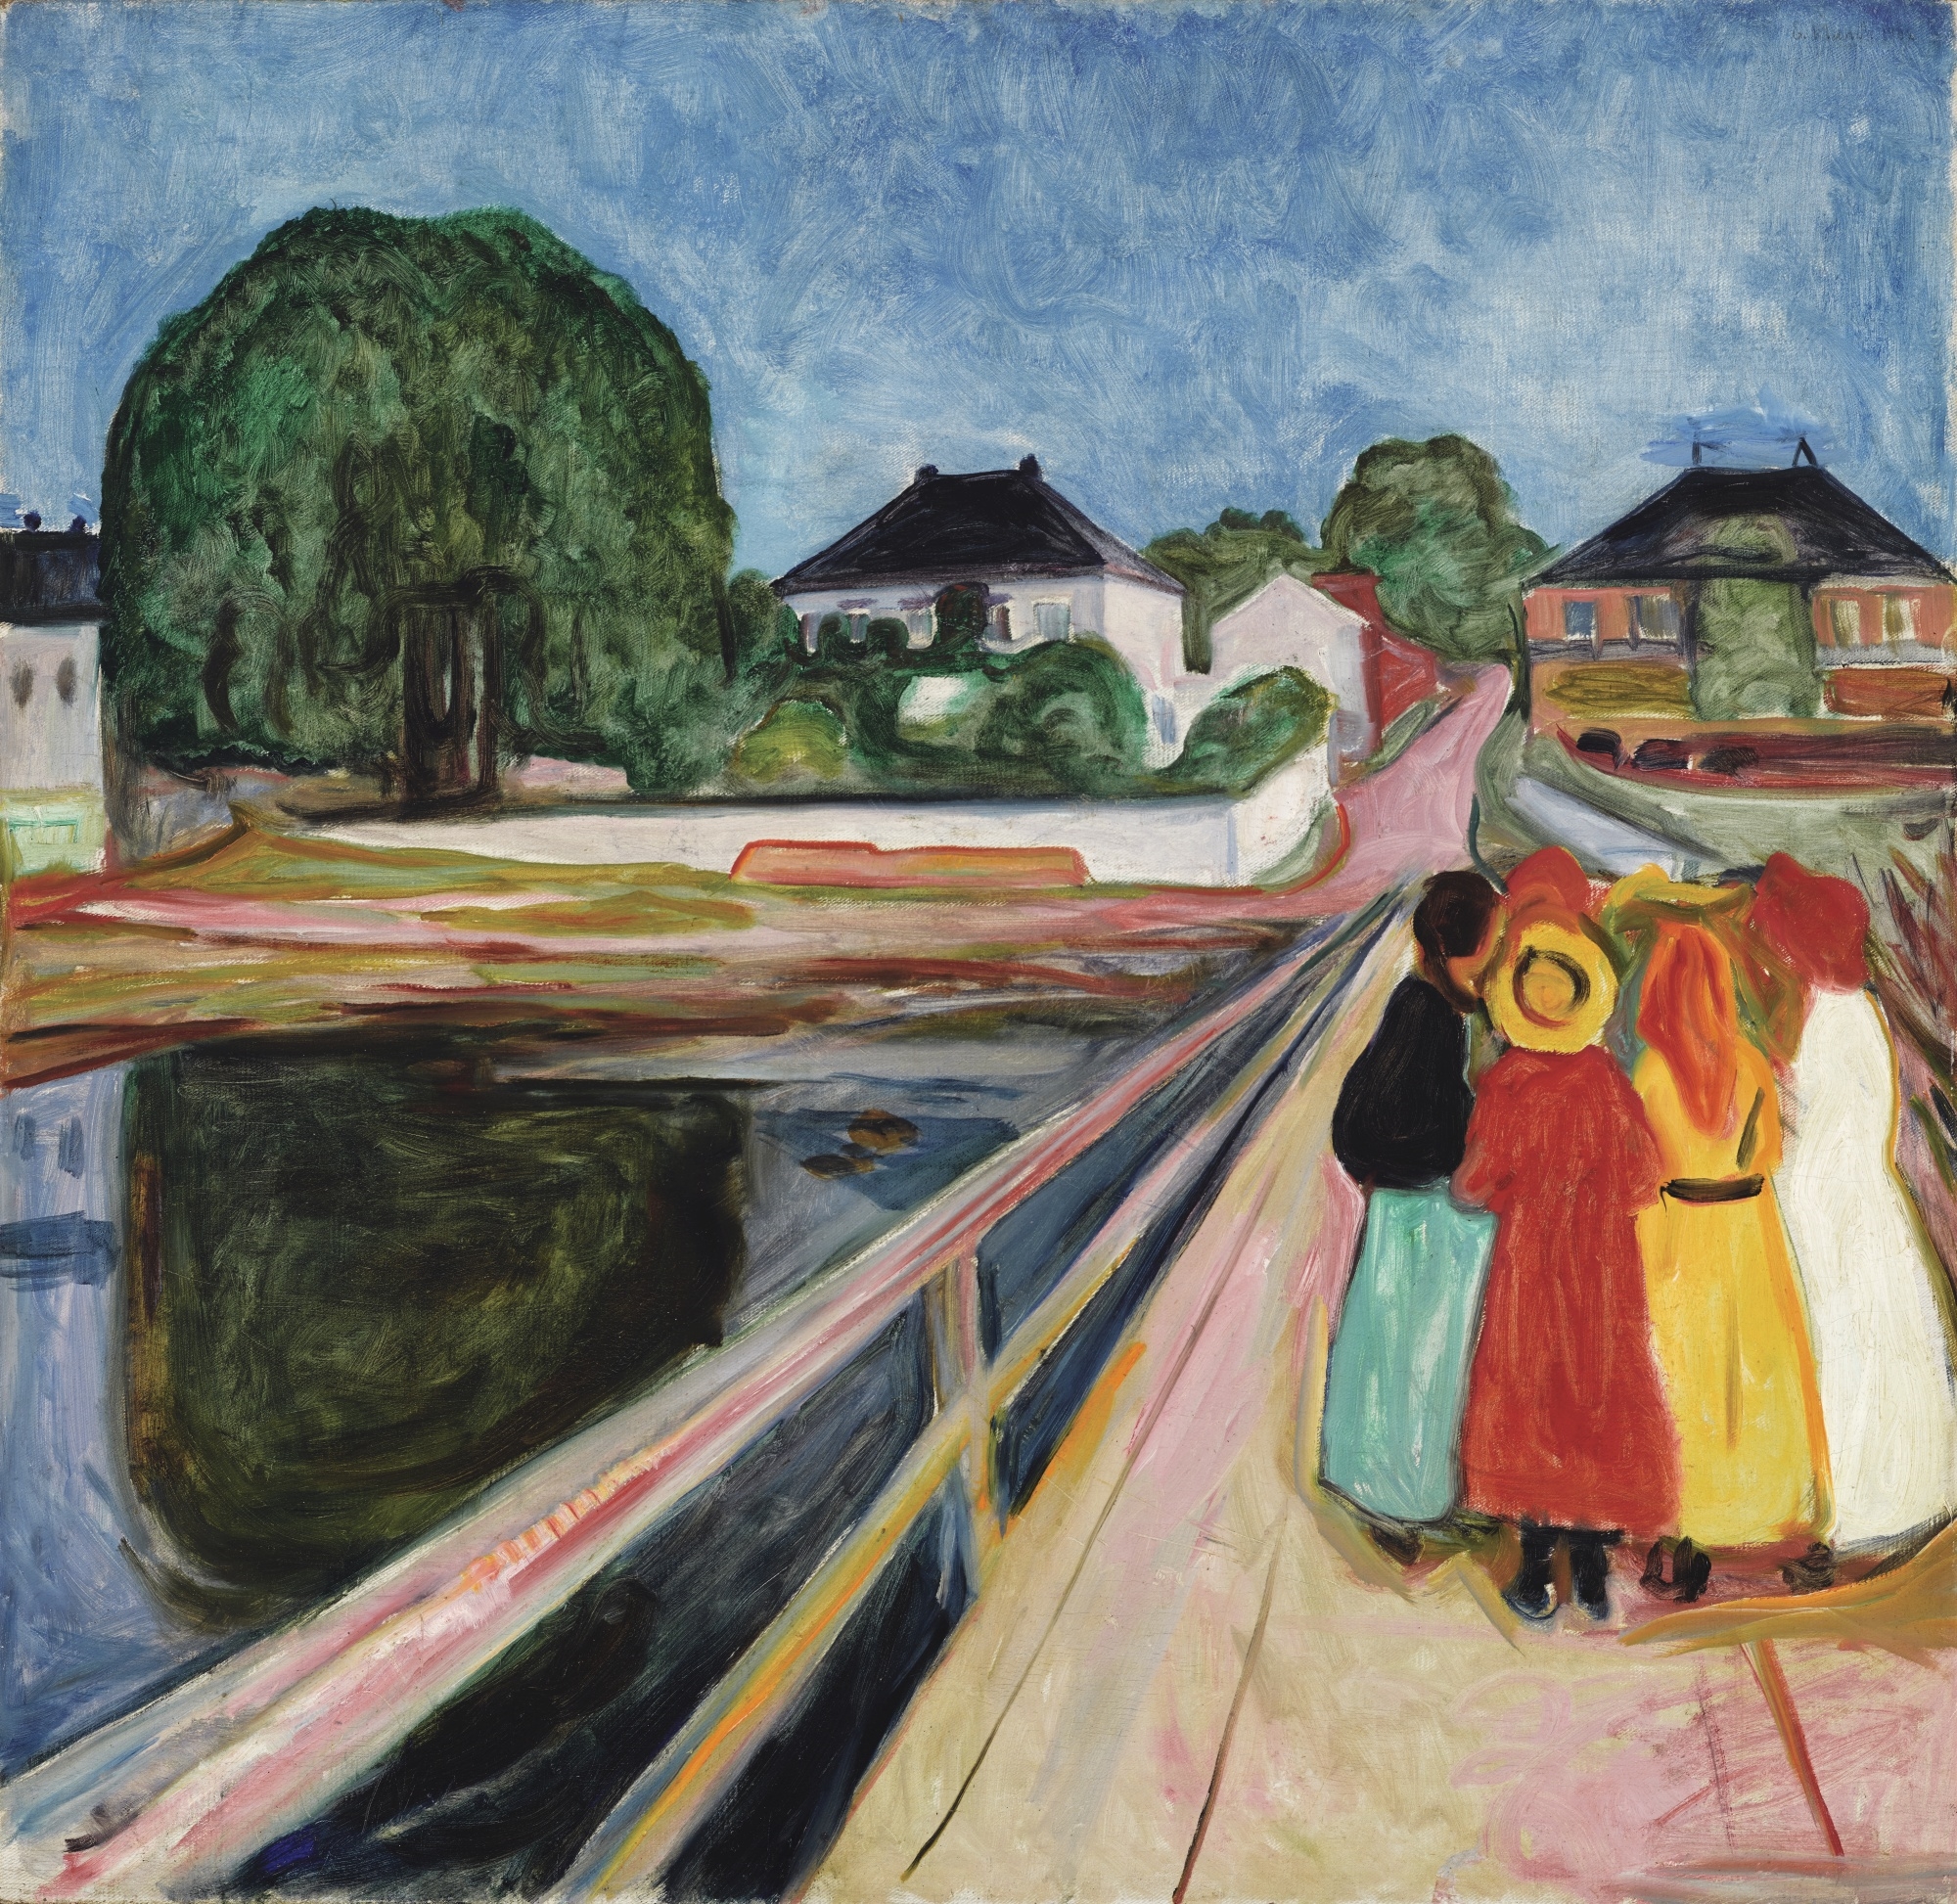 PIKENE PÅ BROEN (GIRLS ON THE BRIDGE) by Edvard Munch, 1902